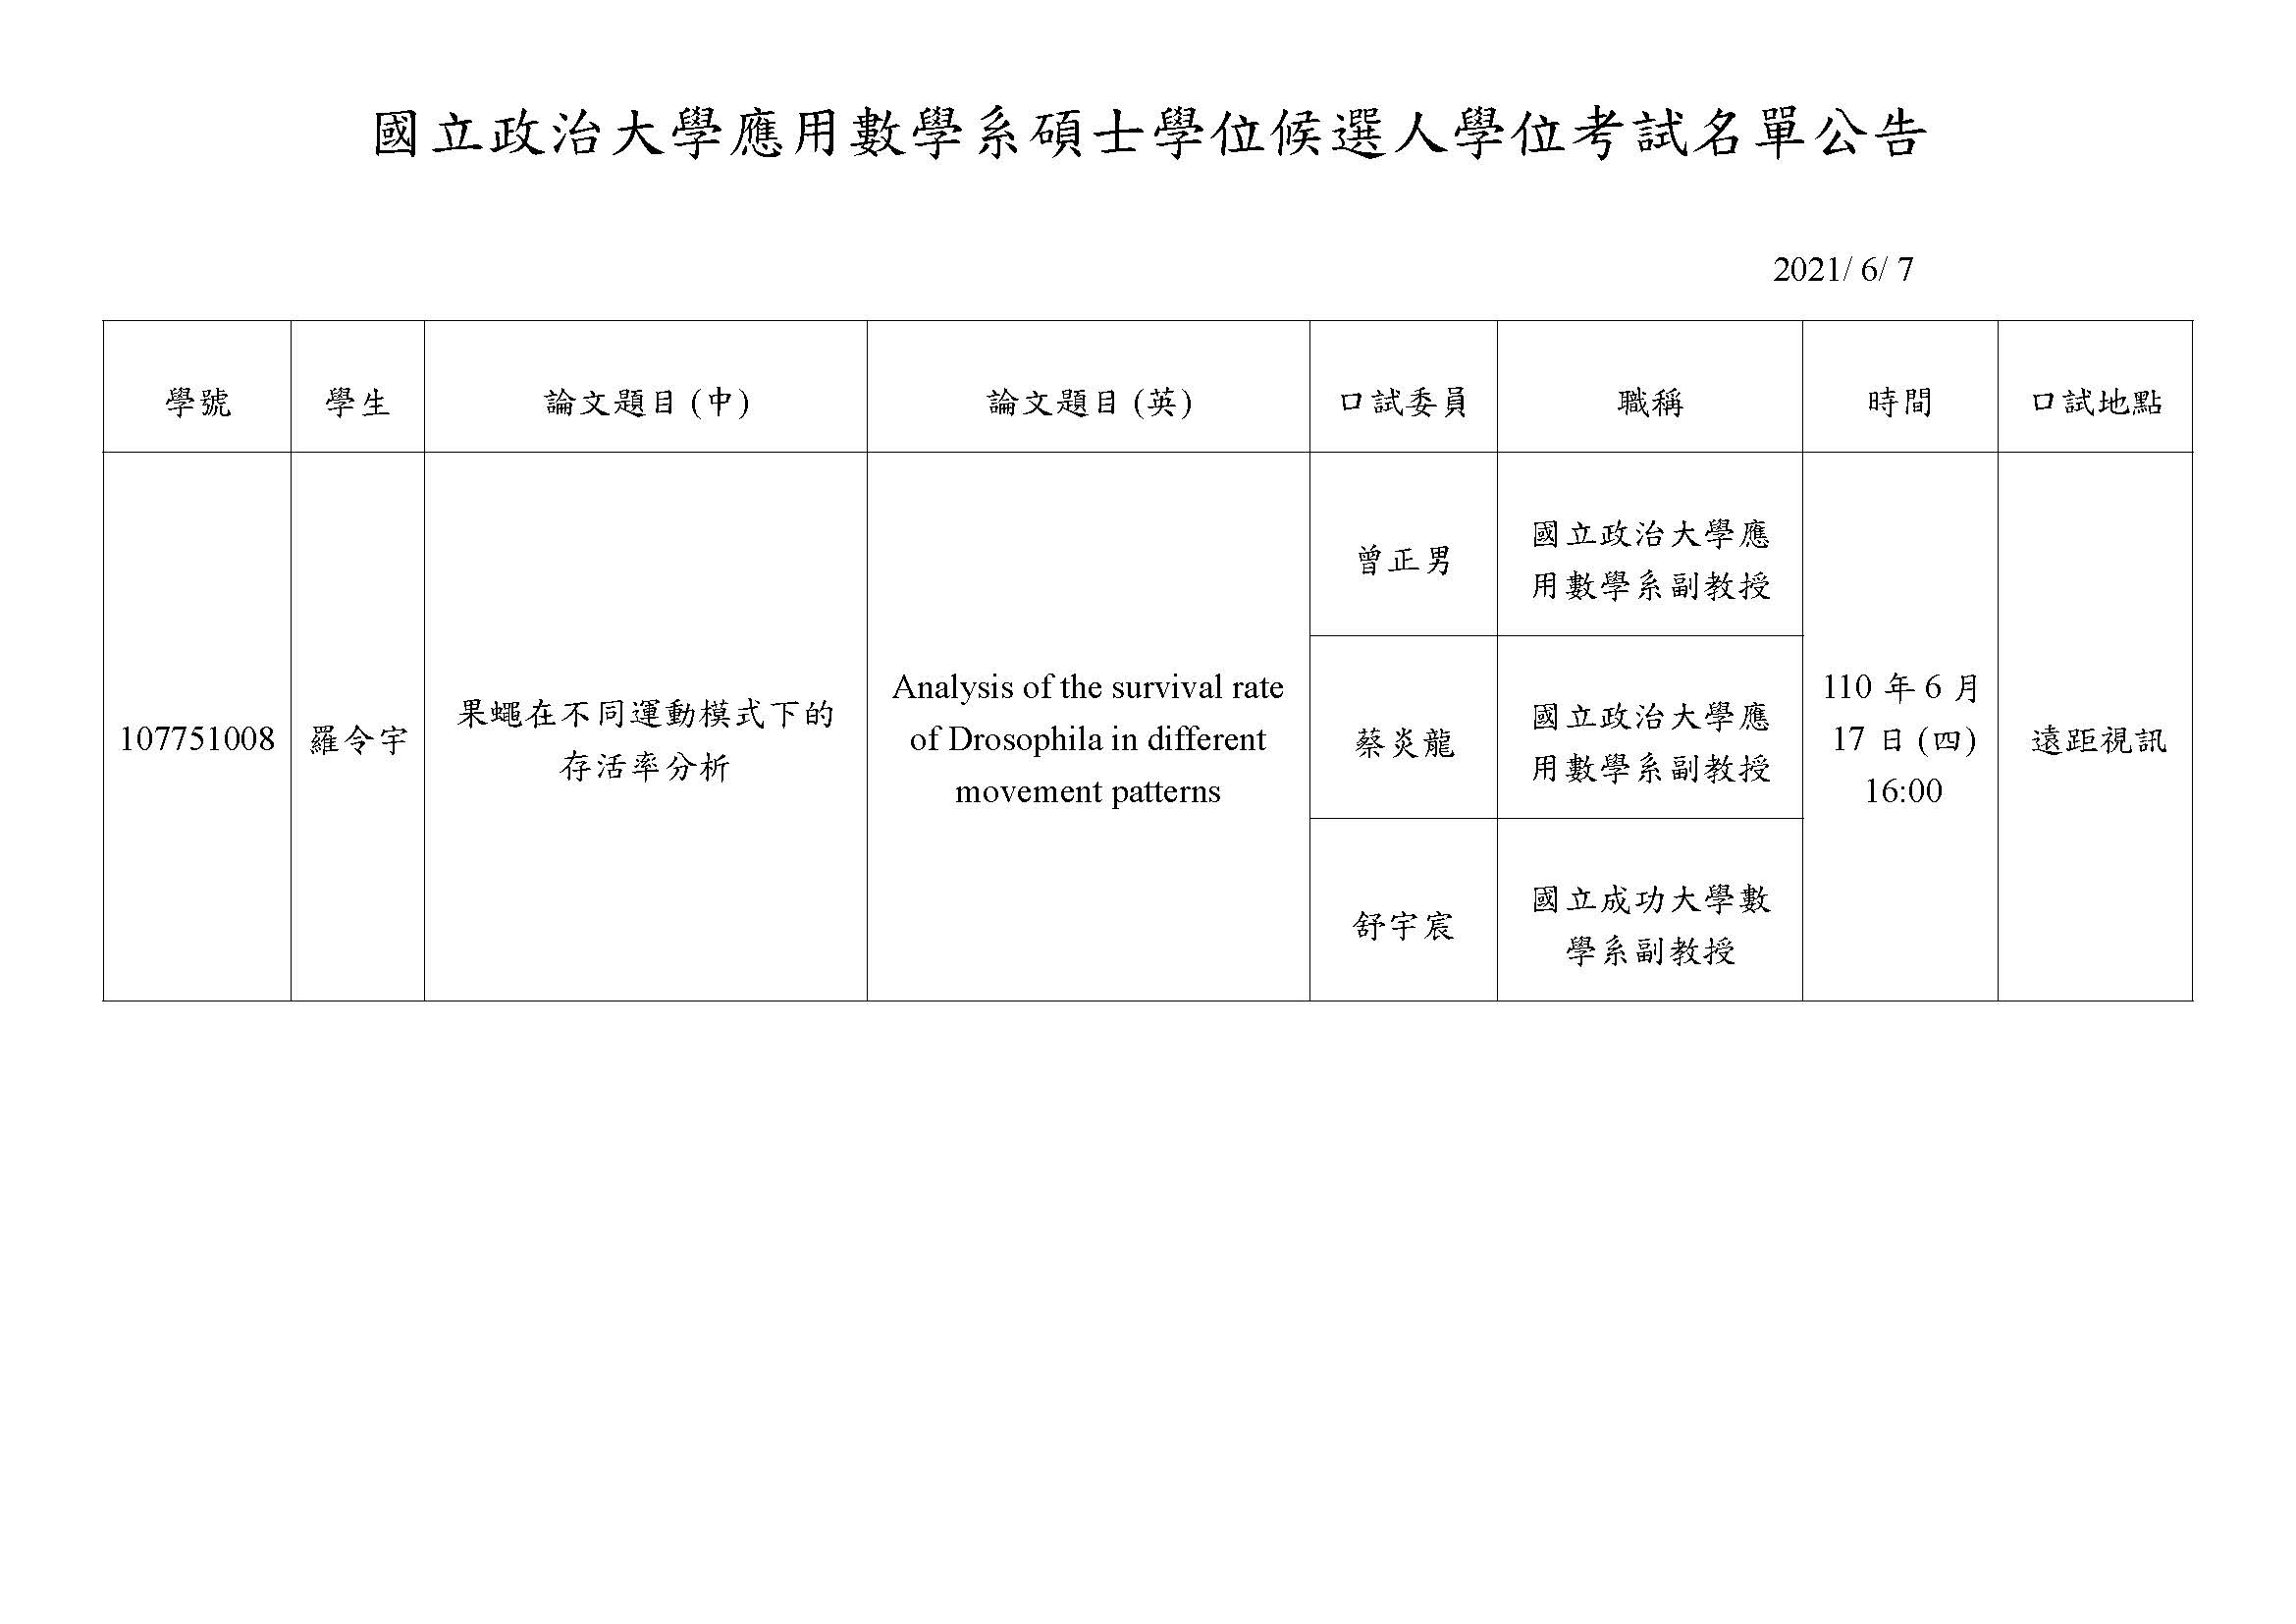 羅令宇碩士學位口試公告(2021/6/17)